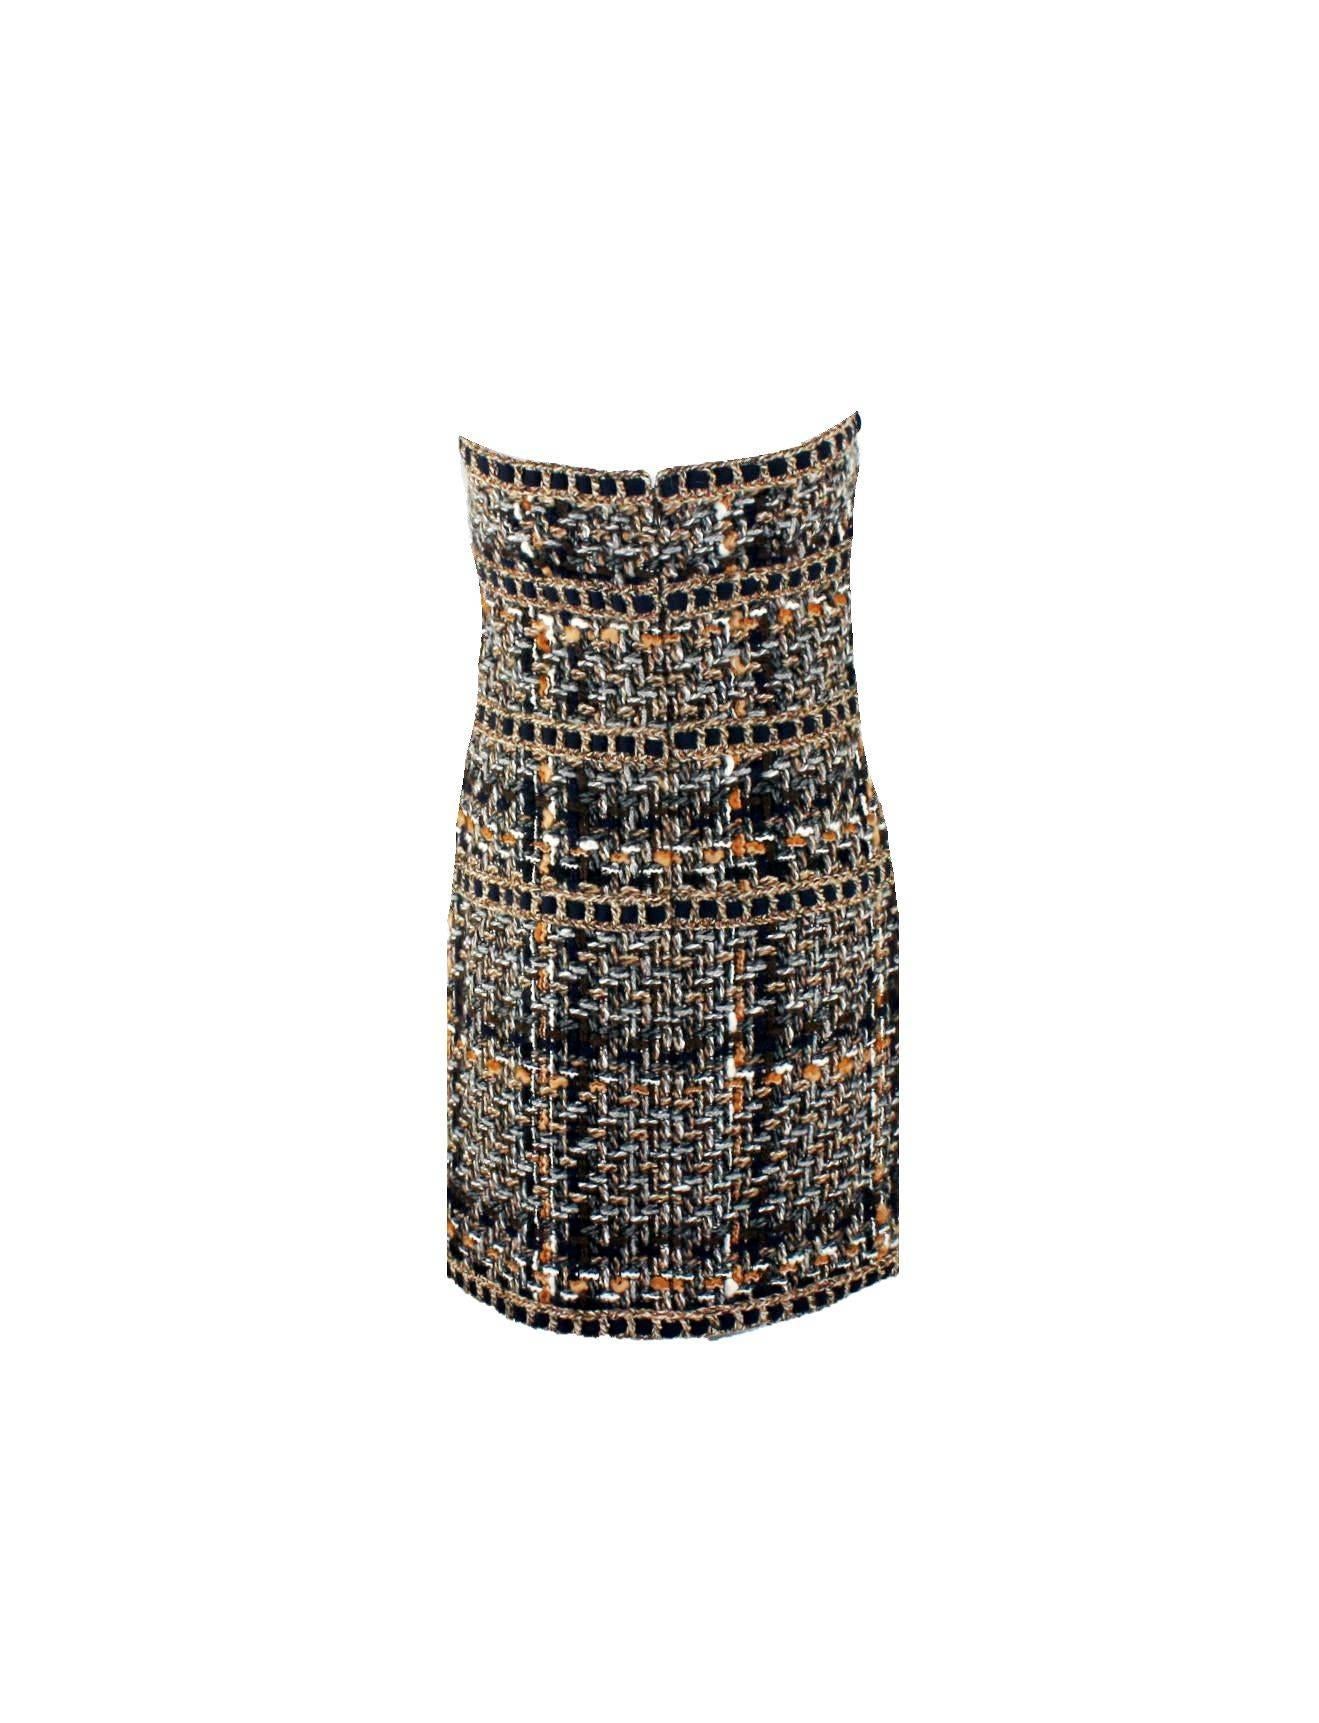 Atemberaubendes CHANEL-Kleid aus Tweed
Schöne handgeflochtene Details
Feinster Fantasie-Tweedstoff, exklusiv für Chanel von Maison Lesage hergestellt
Vollständig mit Chanel CC-Logo-Seide gefüttert
Gummiband innen für perfekten Sitz
Schließt mit